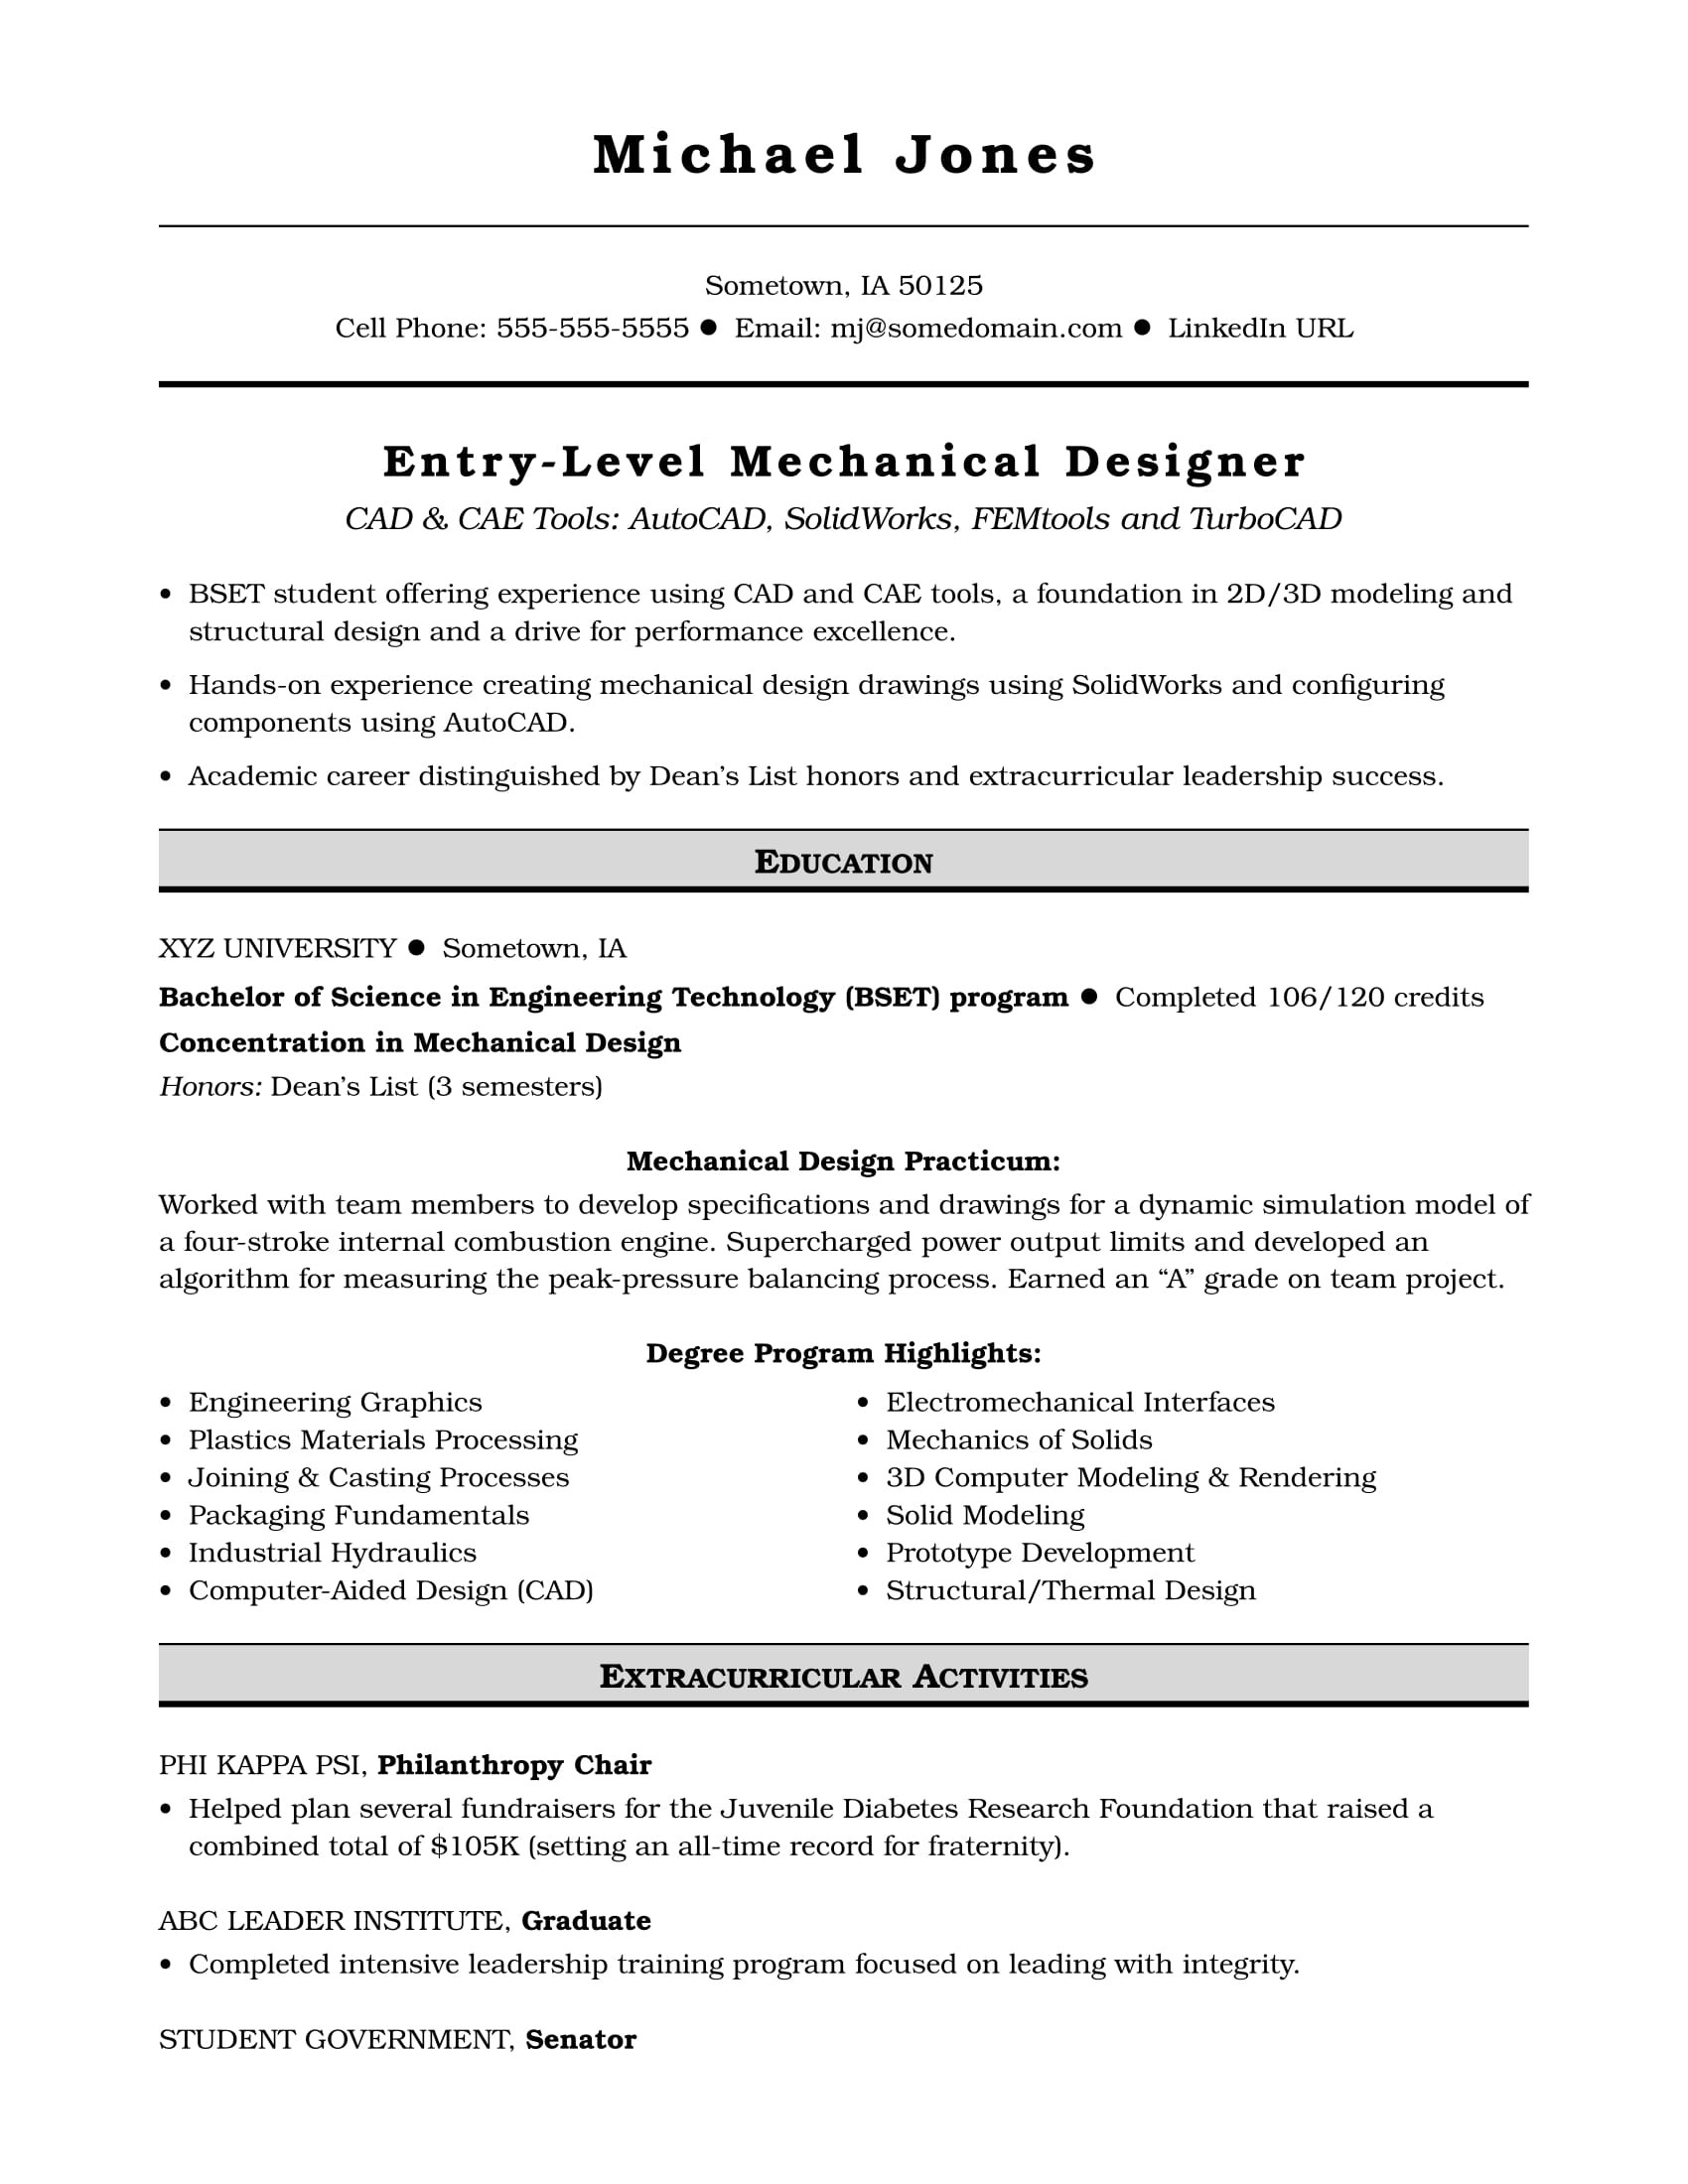 Sample Resume Objectives for Entry Level Freshers Positions Sample Resume for An Entry-level Mechanical Designer Monster.com